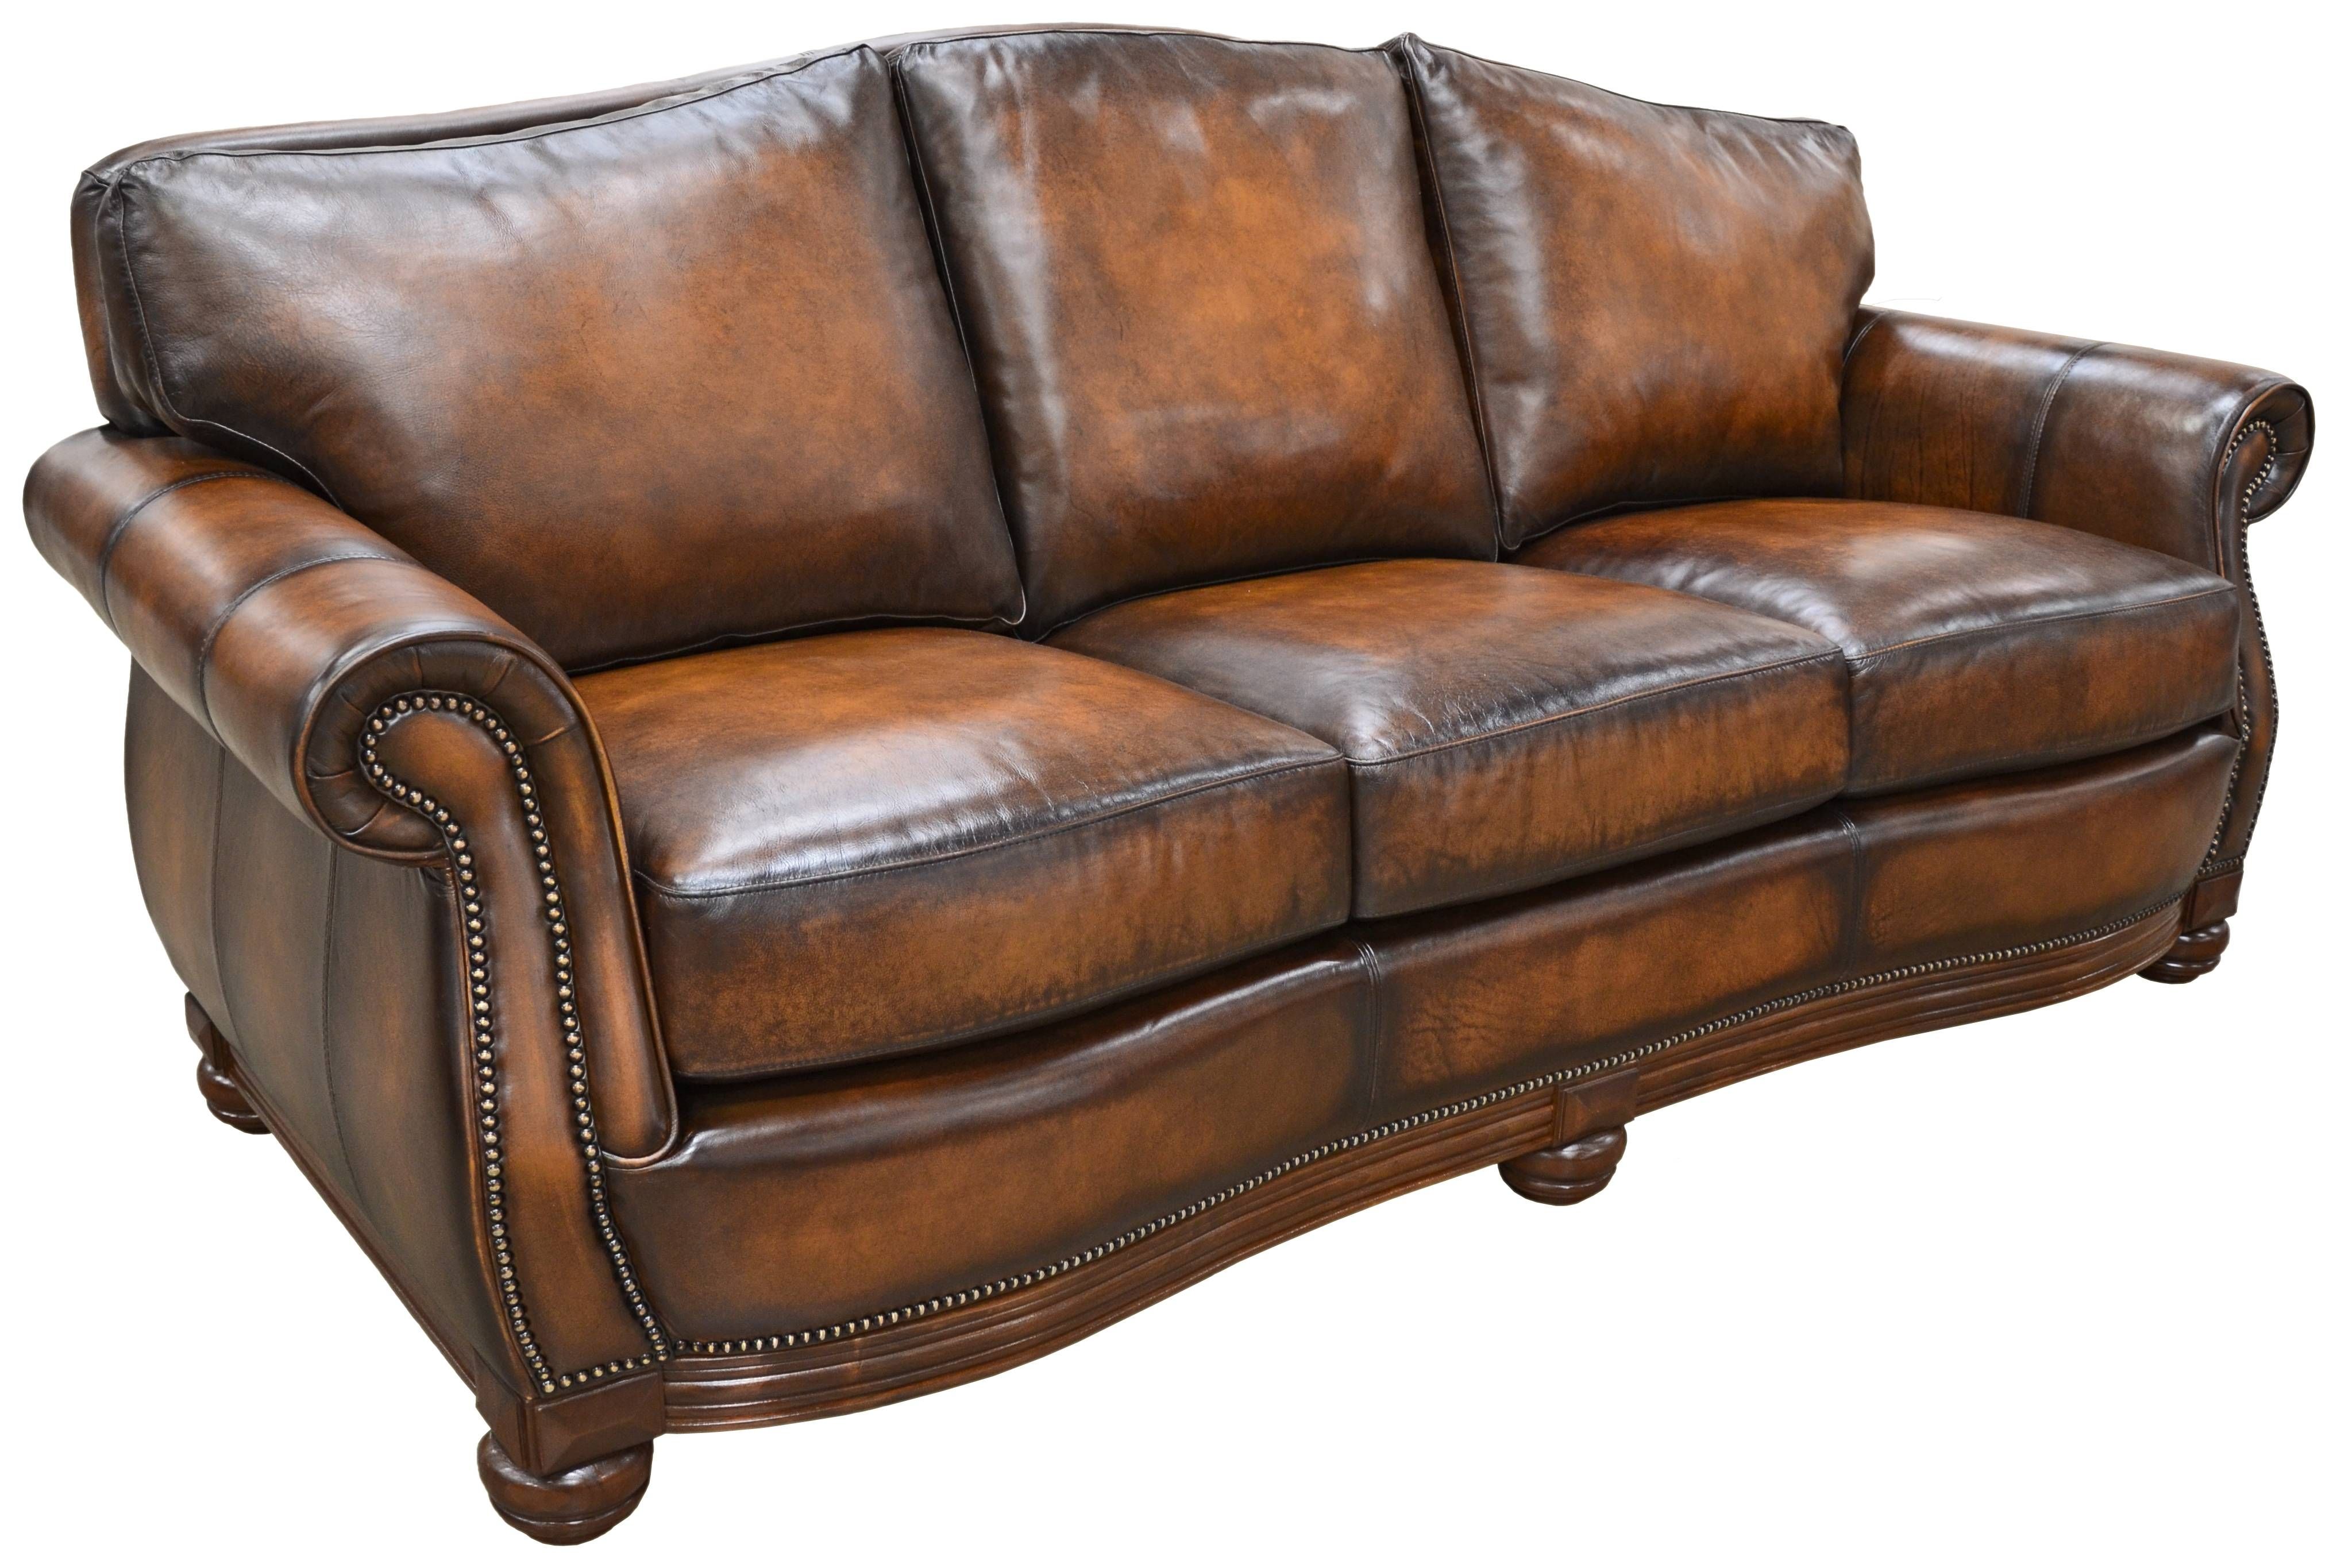 Quality Leather Sofa In Austin, Dallas, San Antonio & Houston Tx With Regard To Camelback Leather Sofas (View 6 of 15)